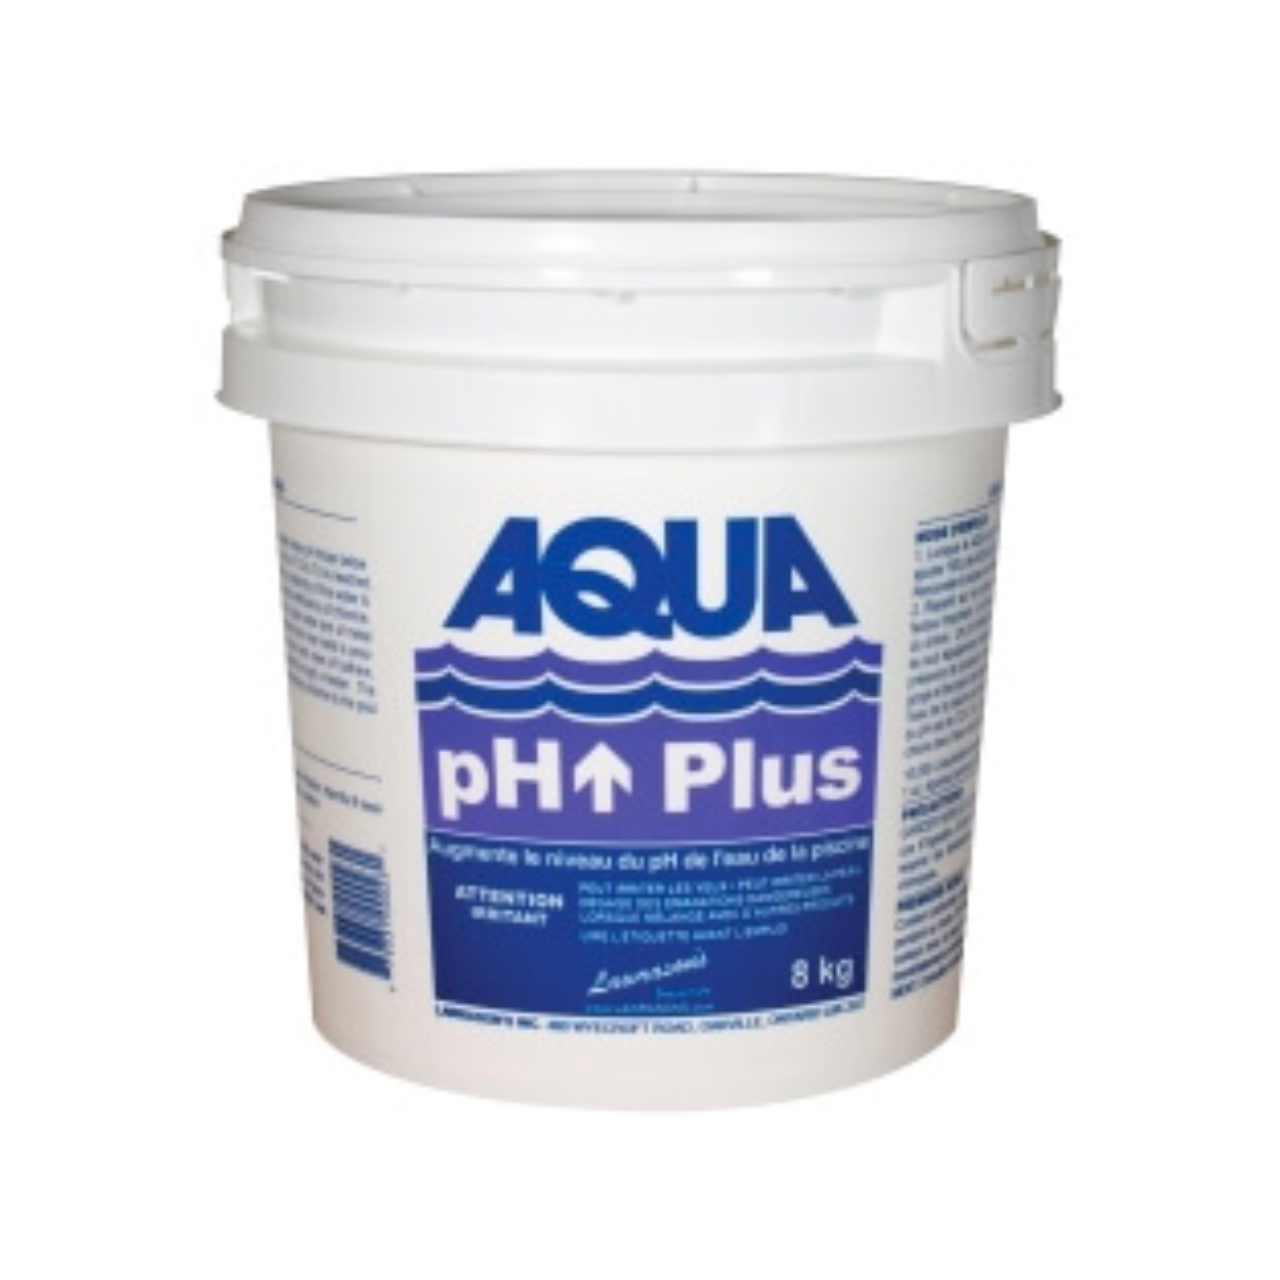 Aqua pH Plus